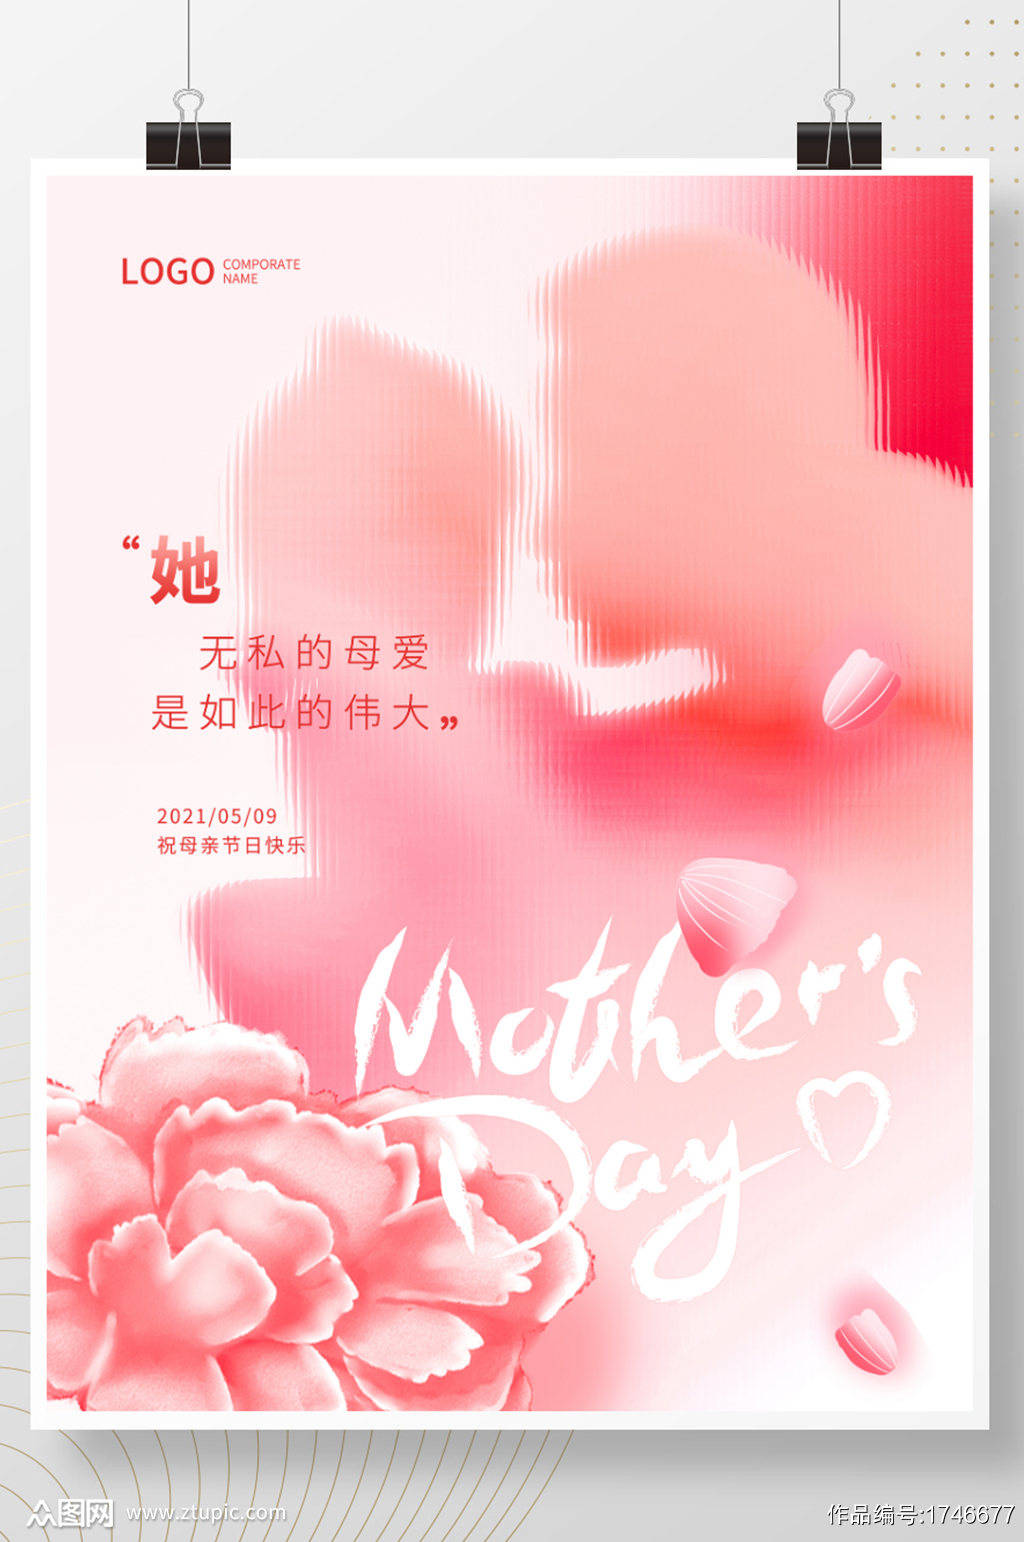 2021年感恩母亲节活动宣传海报素材